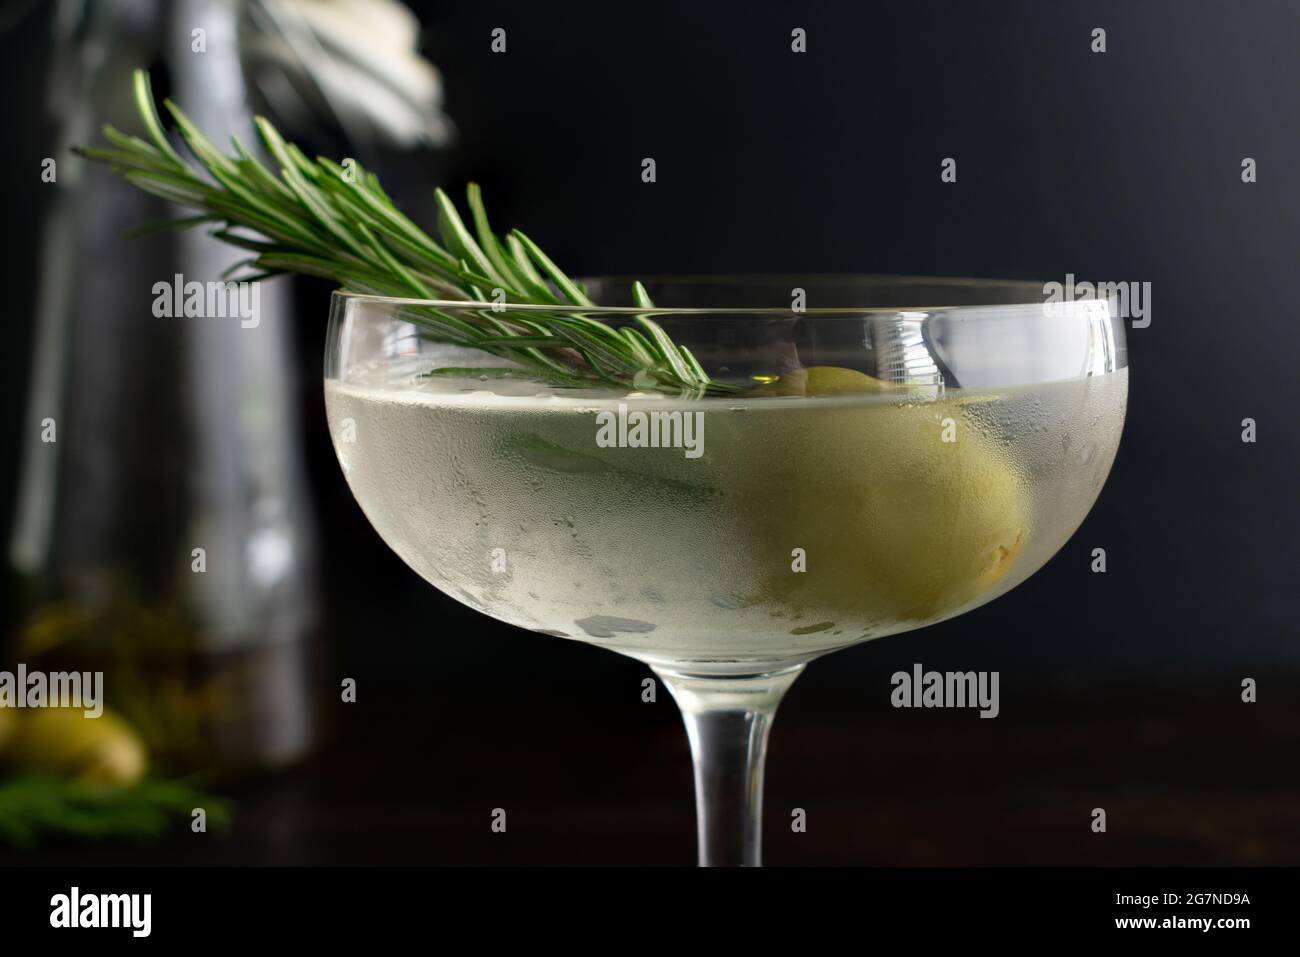 Martini sale à l'huile de romarin fumé : martini de gin sale servi dans un verre de coupé et garni d'une branche de romarin dans une olive verte Banque D'Images